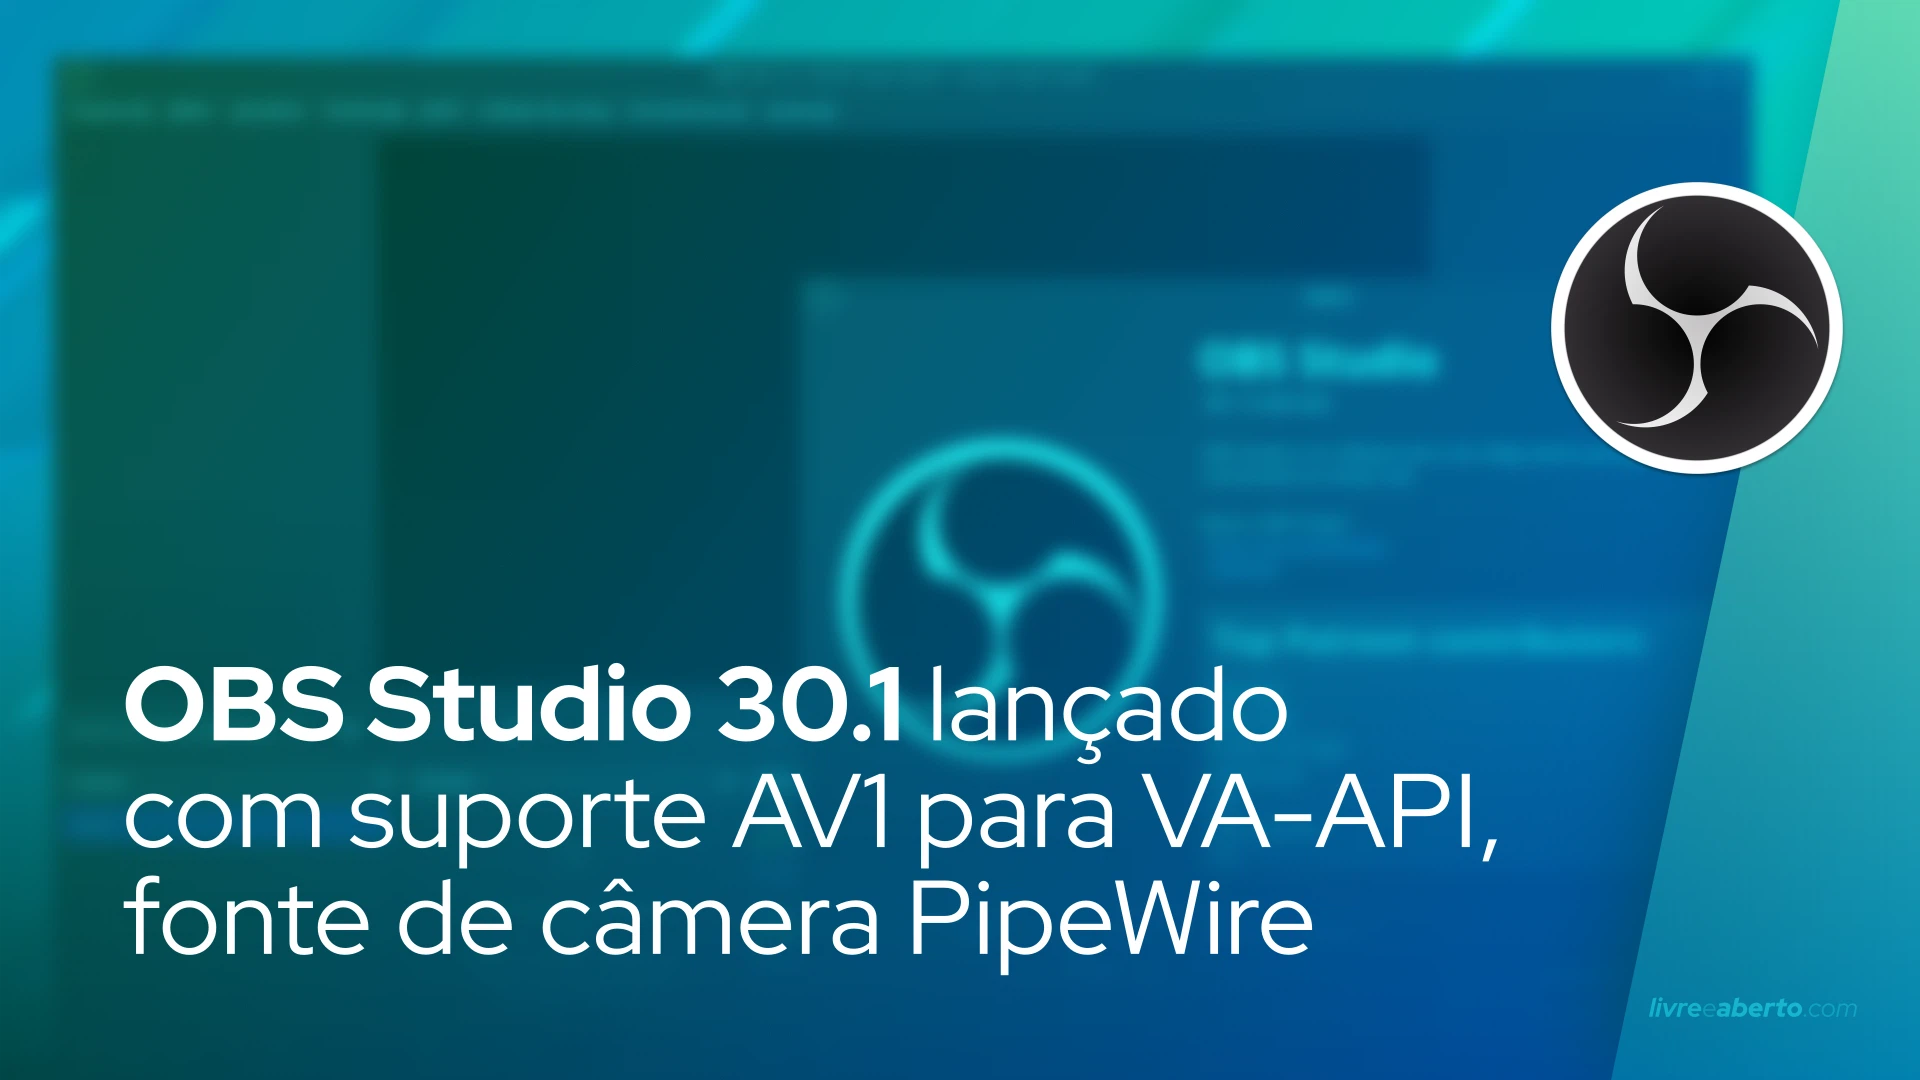 OBS Studio 30.1 lançado com suporte AV1 para VA-API, fonte de câmera PipeWire